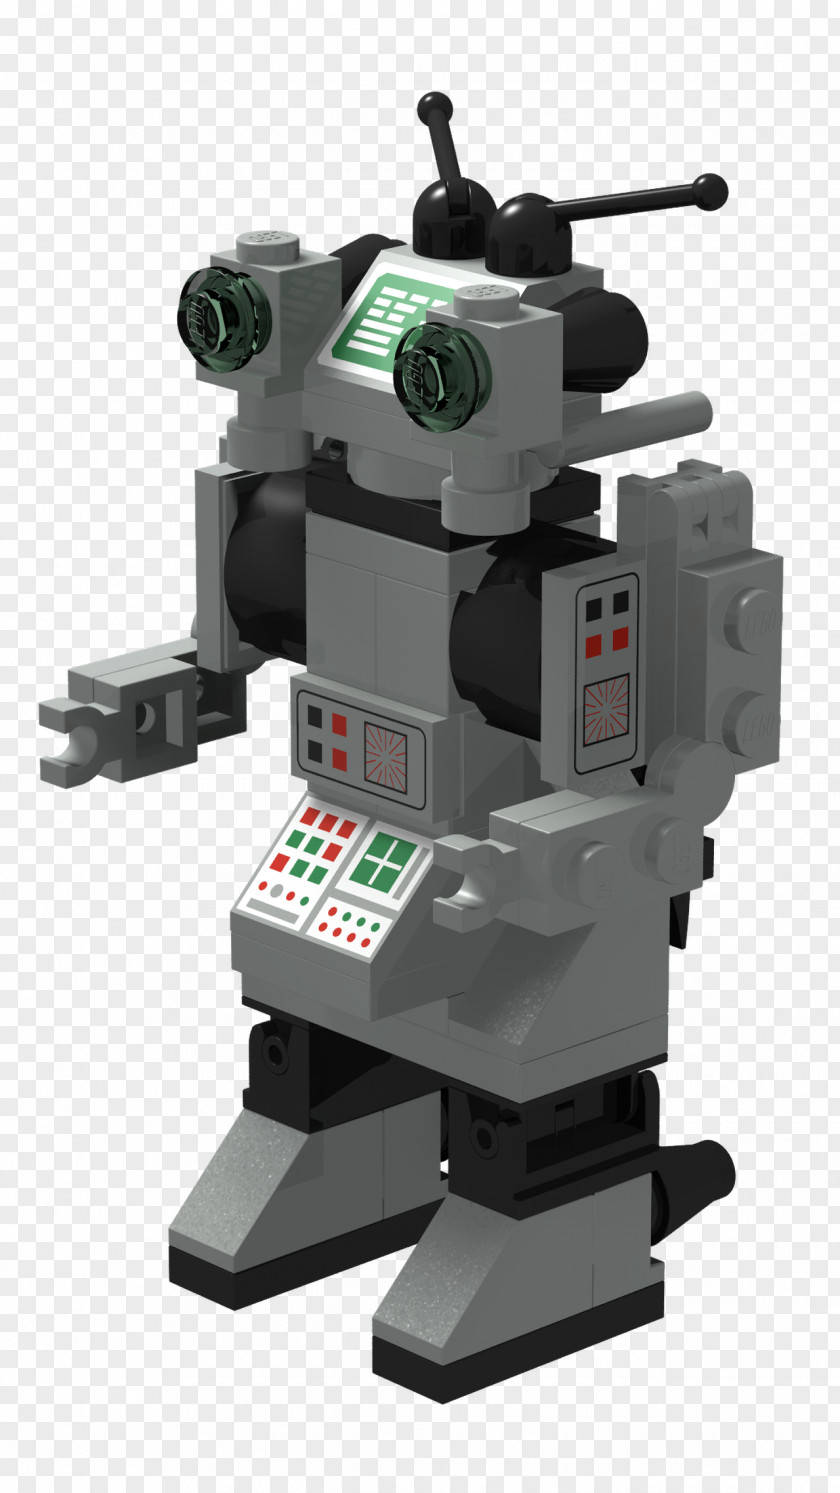 BOTÃO Robot LEGO Science Fiction PNG